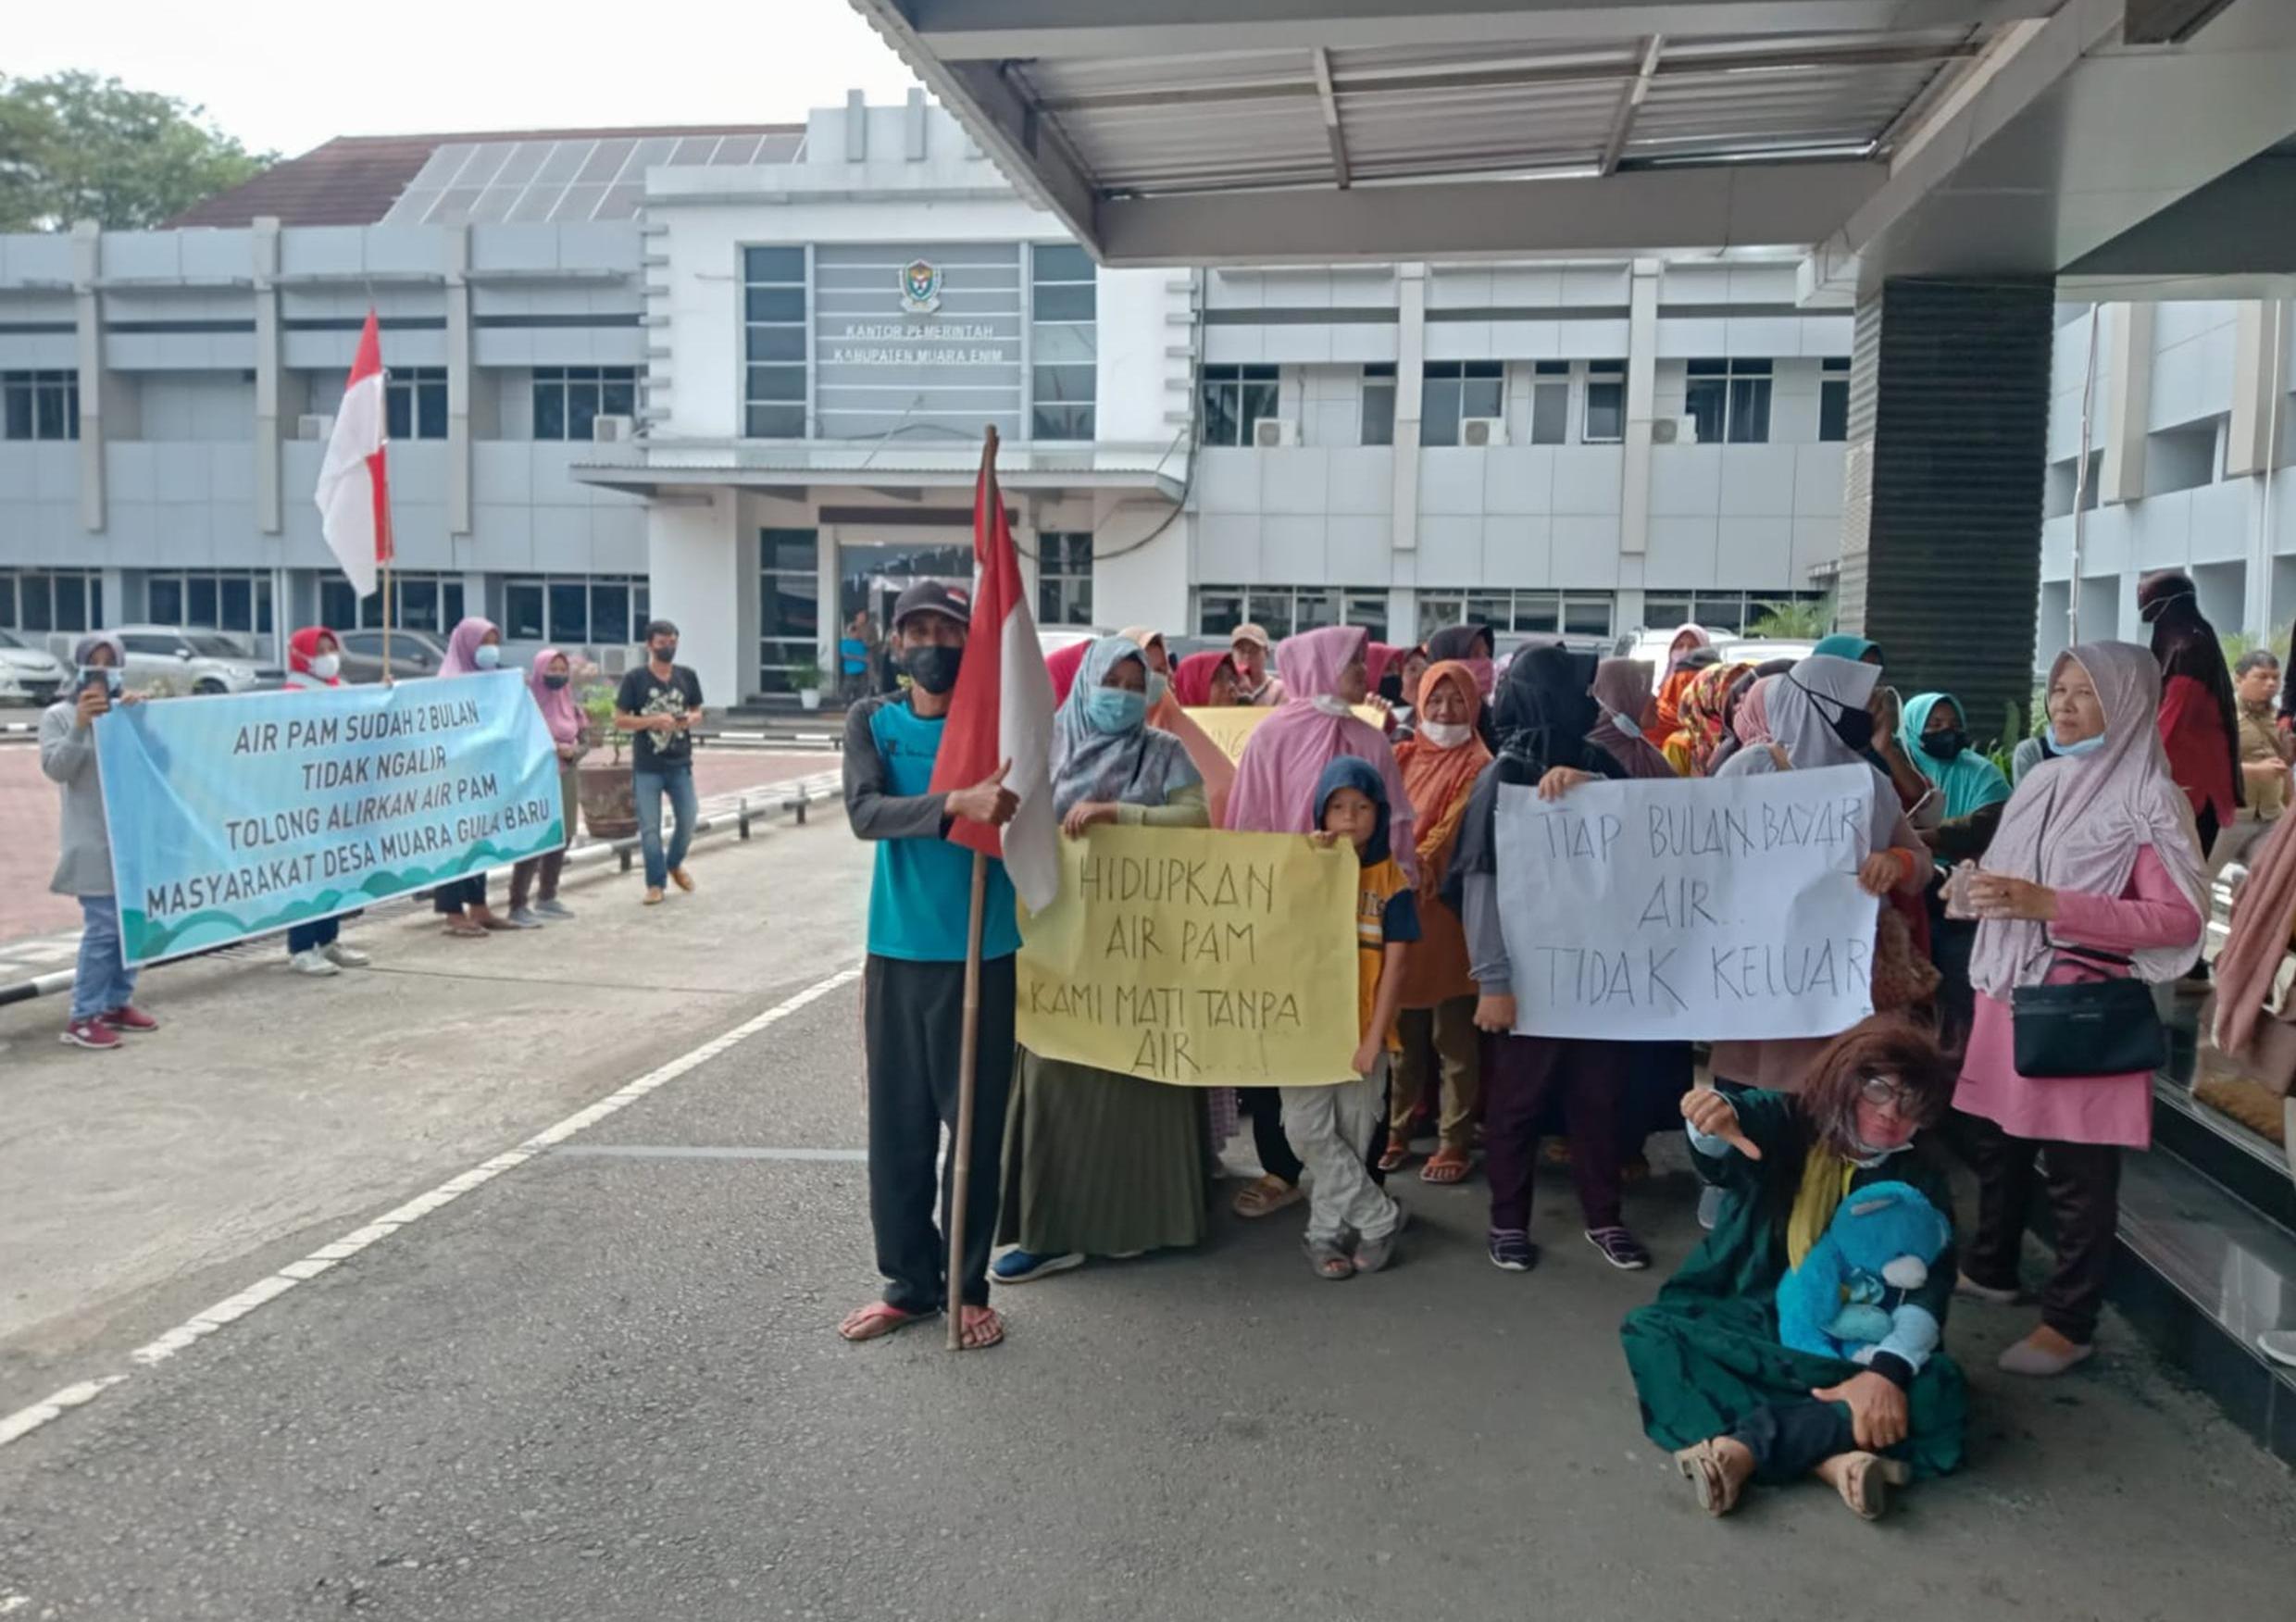 Gara-gara Air PDAM Tak Mengalir, Emak-emak Demo ke Kantor Bupati